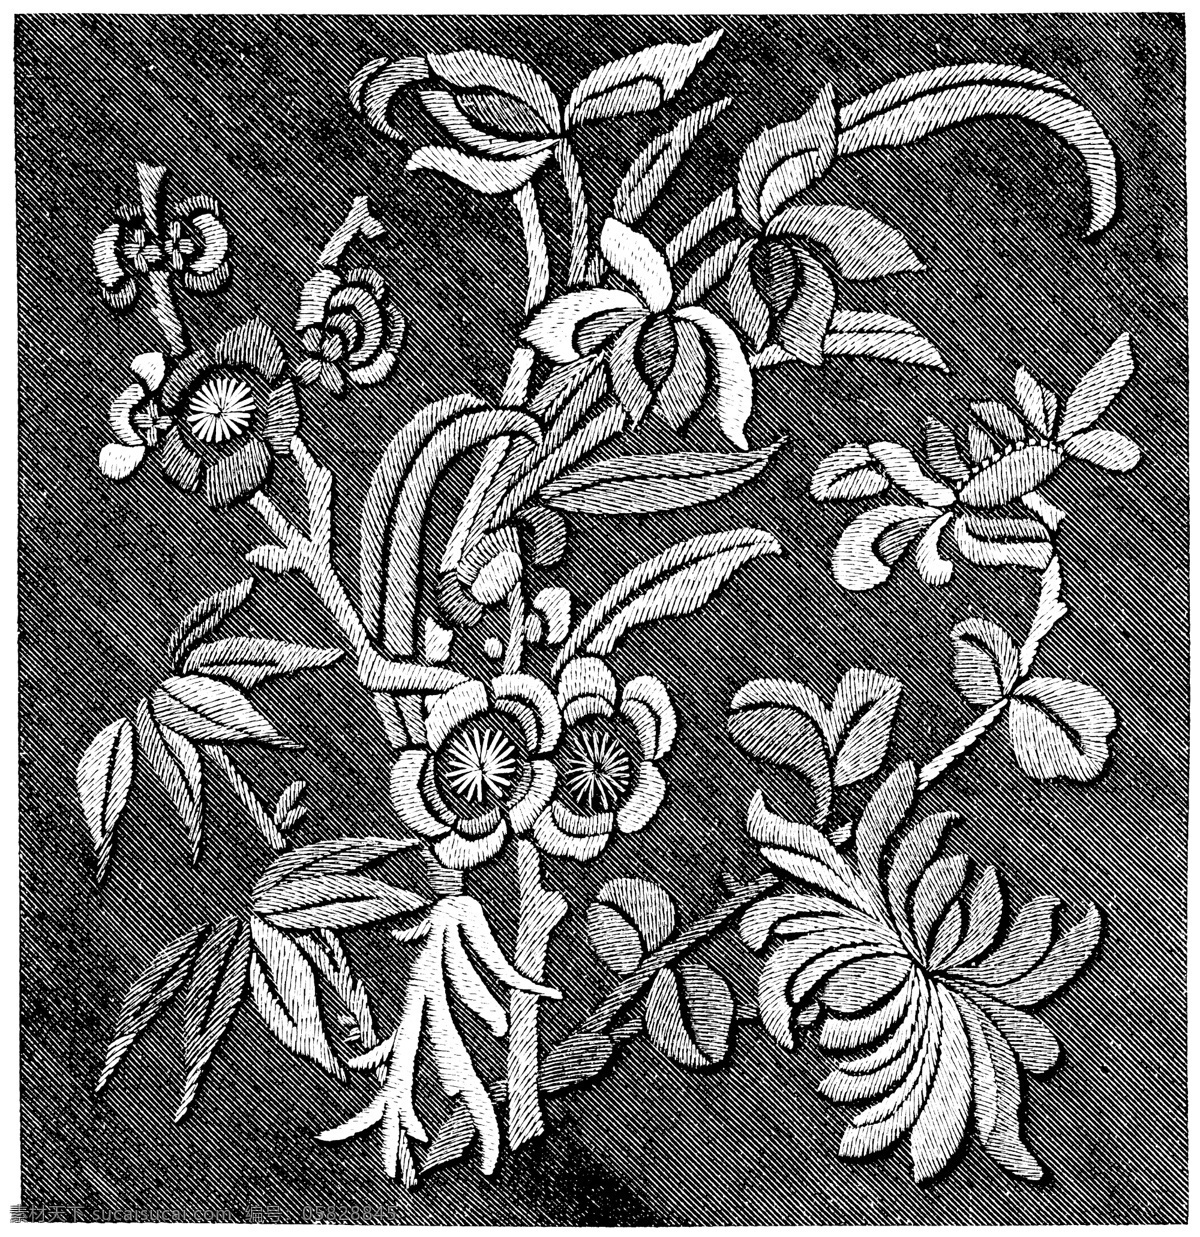 黑白 花边 植物 纹样 线条 花卉 服装边饰 刺绣 传统文化 文化艺术